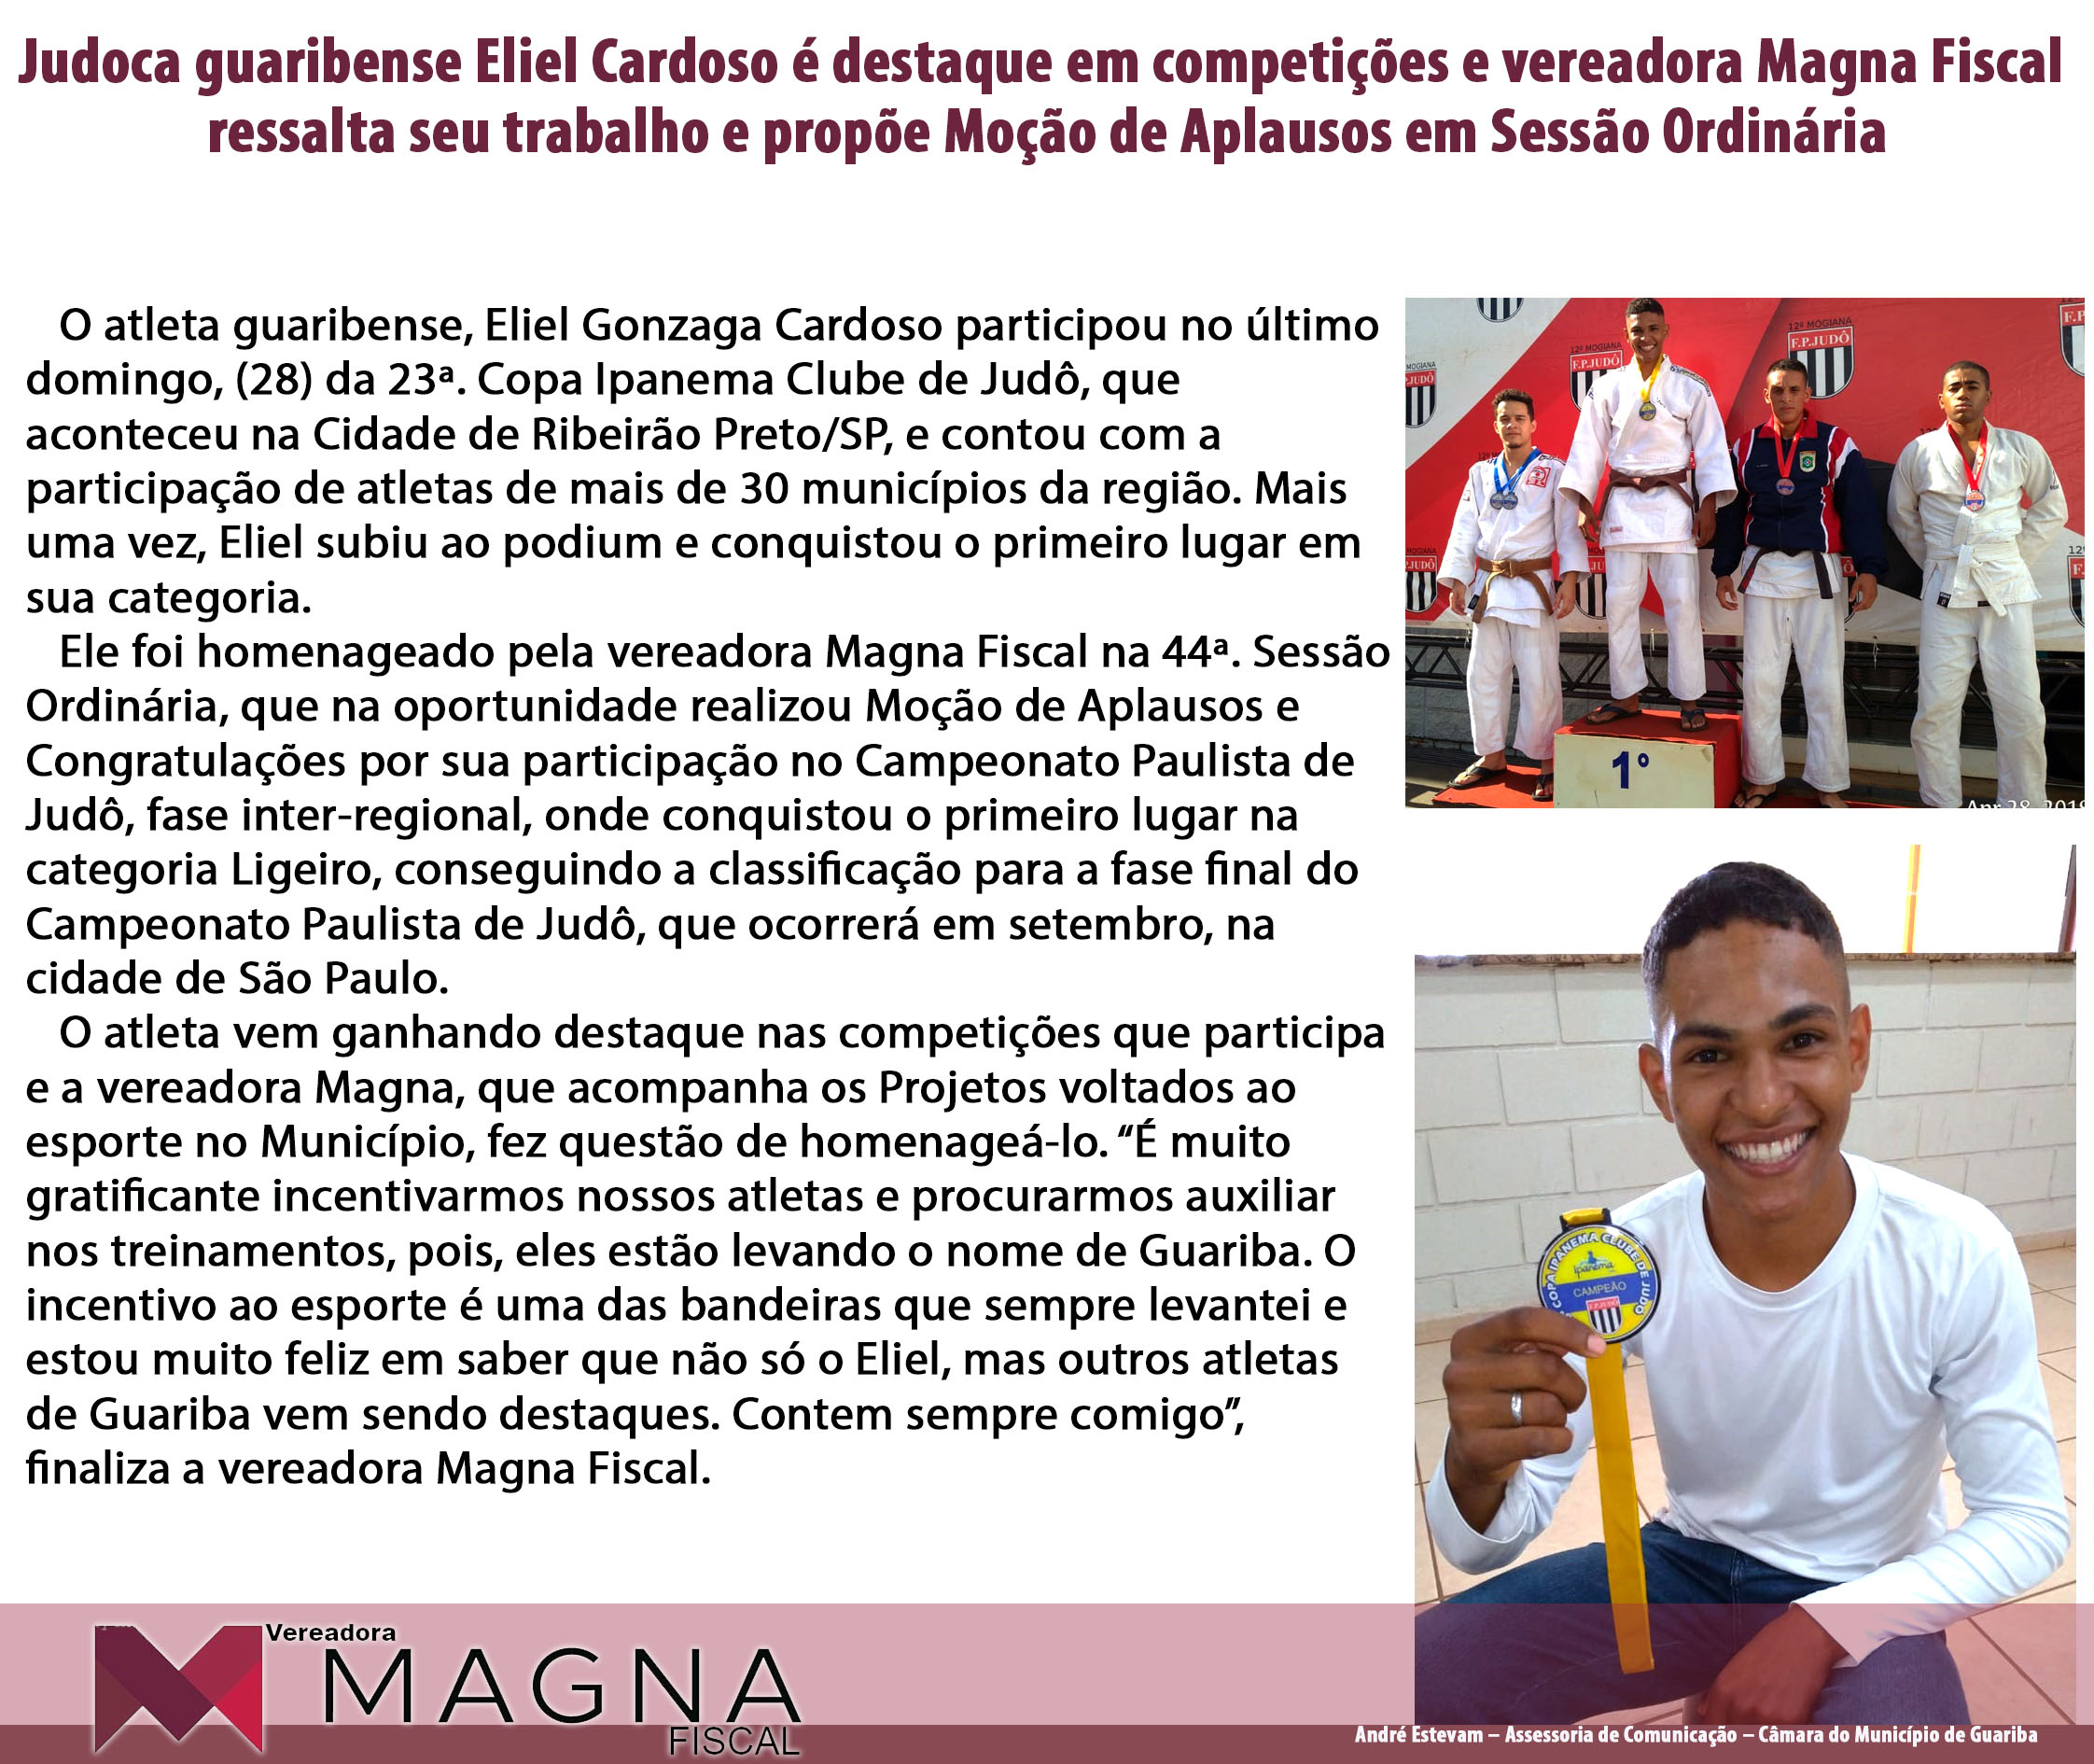 Judoca guaribense Eliel Cardoso é destaque em competições e vereadora Magna Fiscal ressalta seu trabalho e propõe Moção de Aplausos em Sessão Ordinária